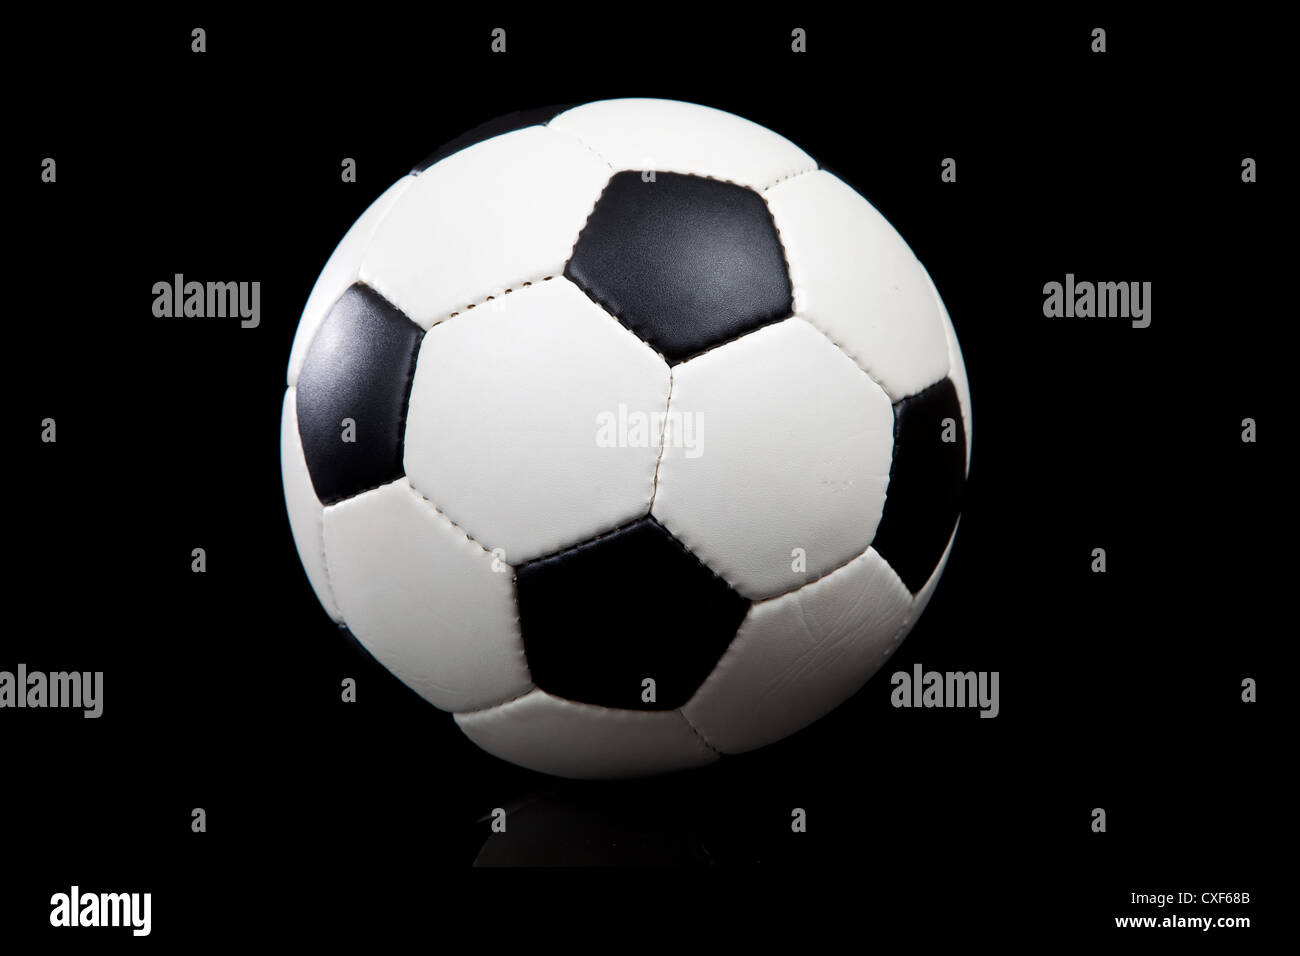 Fußball auf einem schwarzen Hintergrund Stockfoto